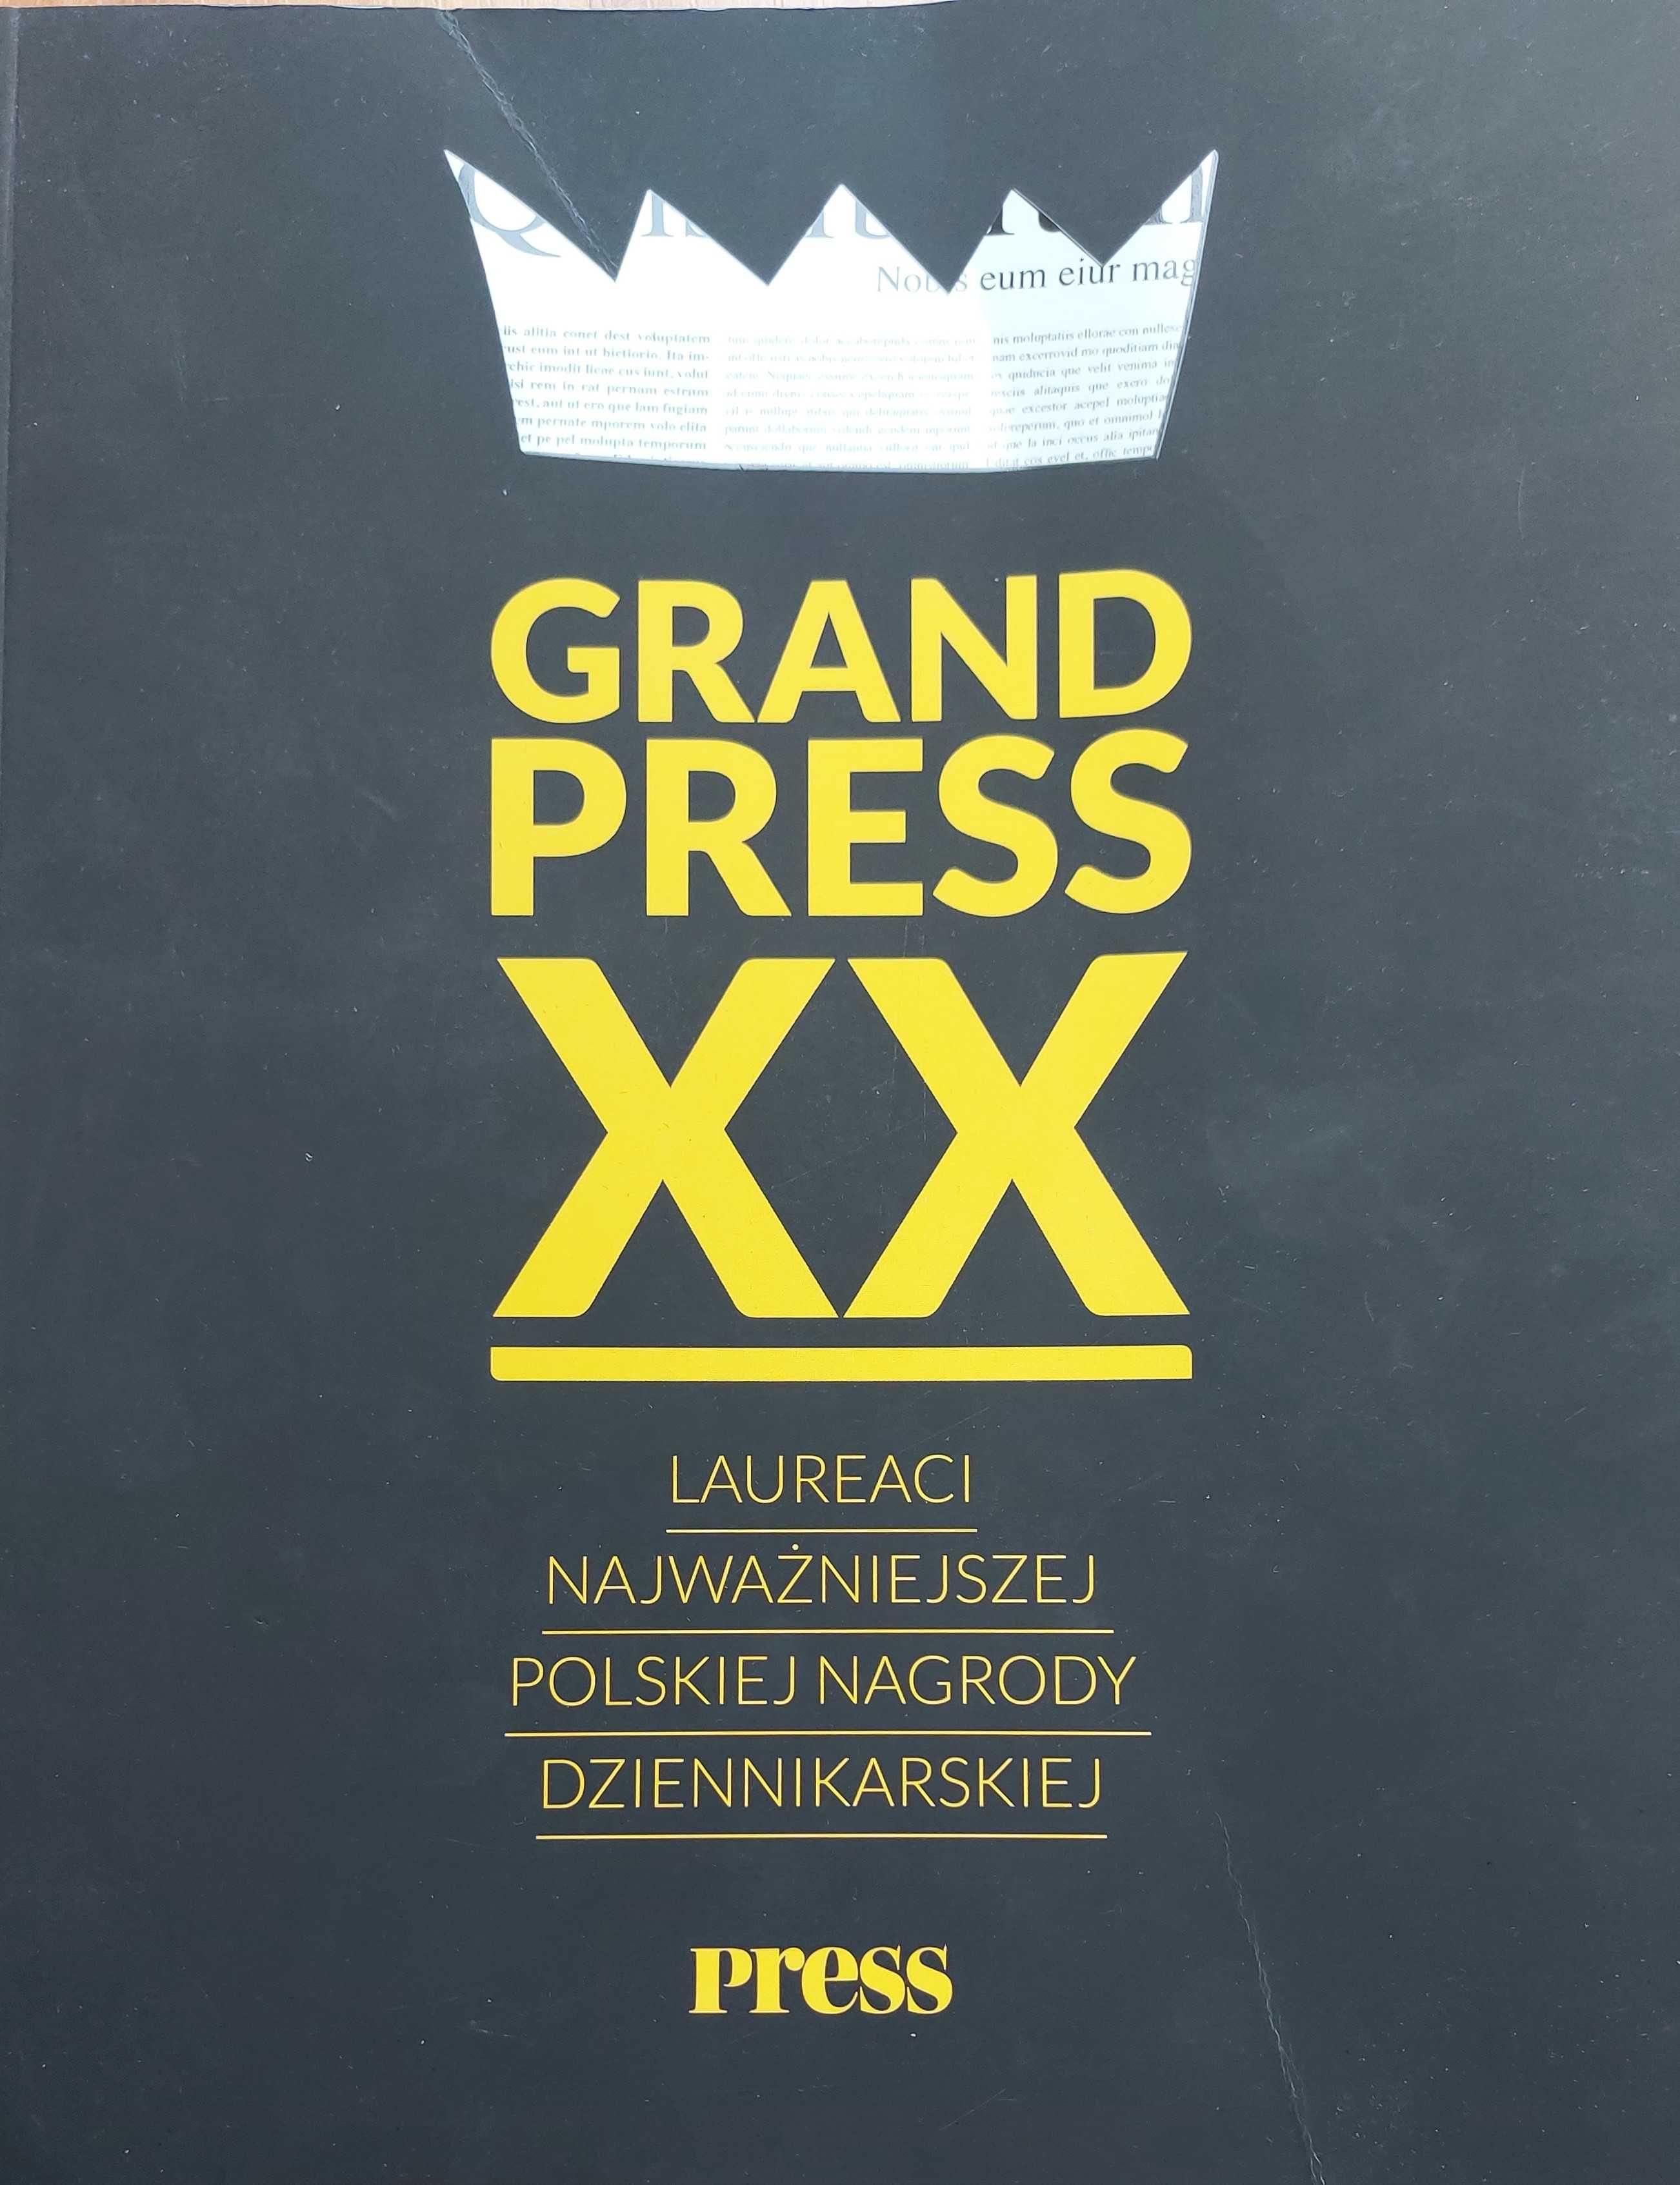 Grand Press XX laureaci najważniejszej polskiej nagrody...